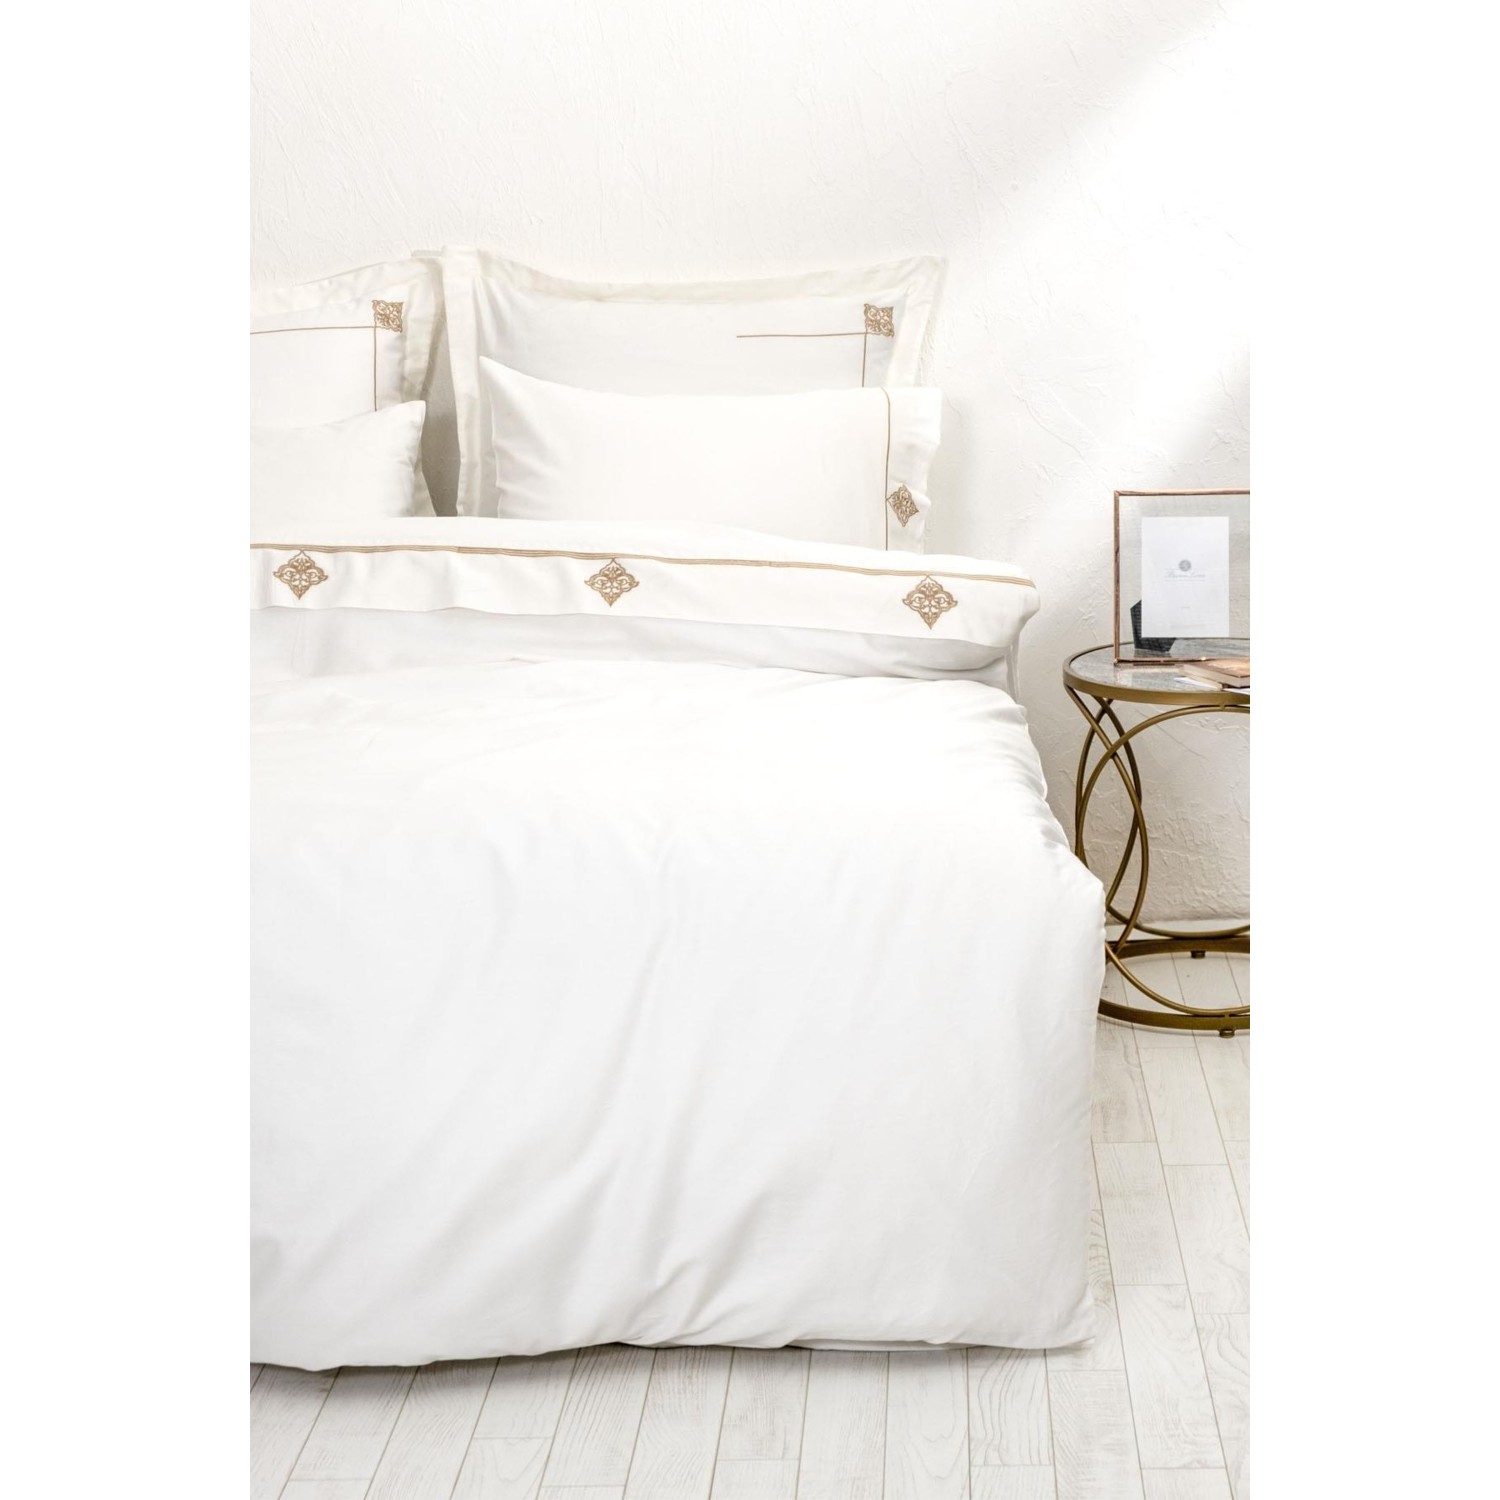 Экокотон Aden Комплект постельного белья королевского размера 100% органический хлопок, атлас кремового цвета с вышивкой 240X220 см